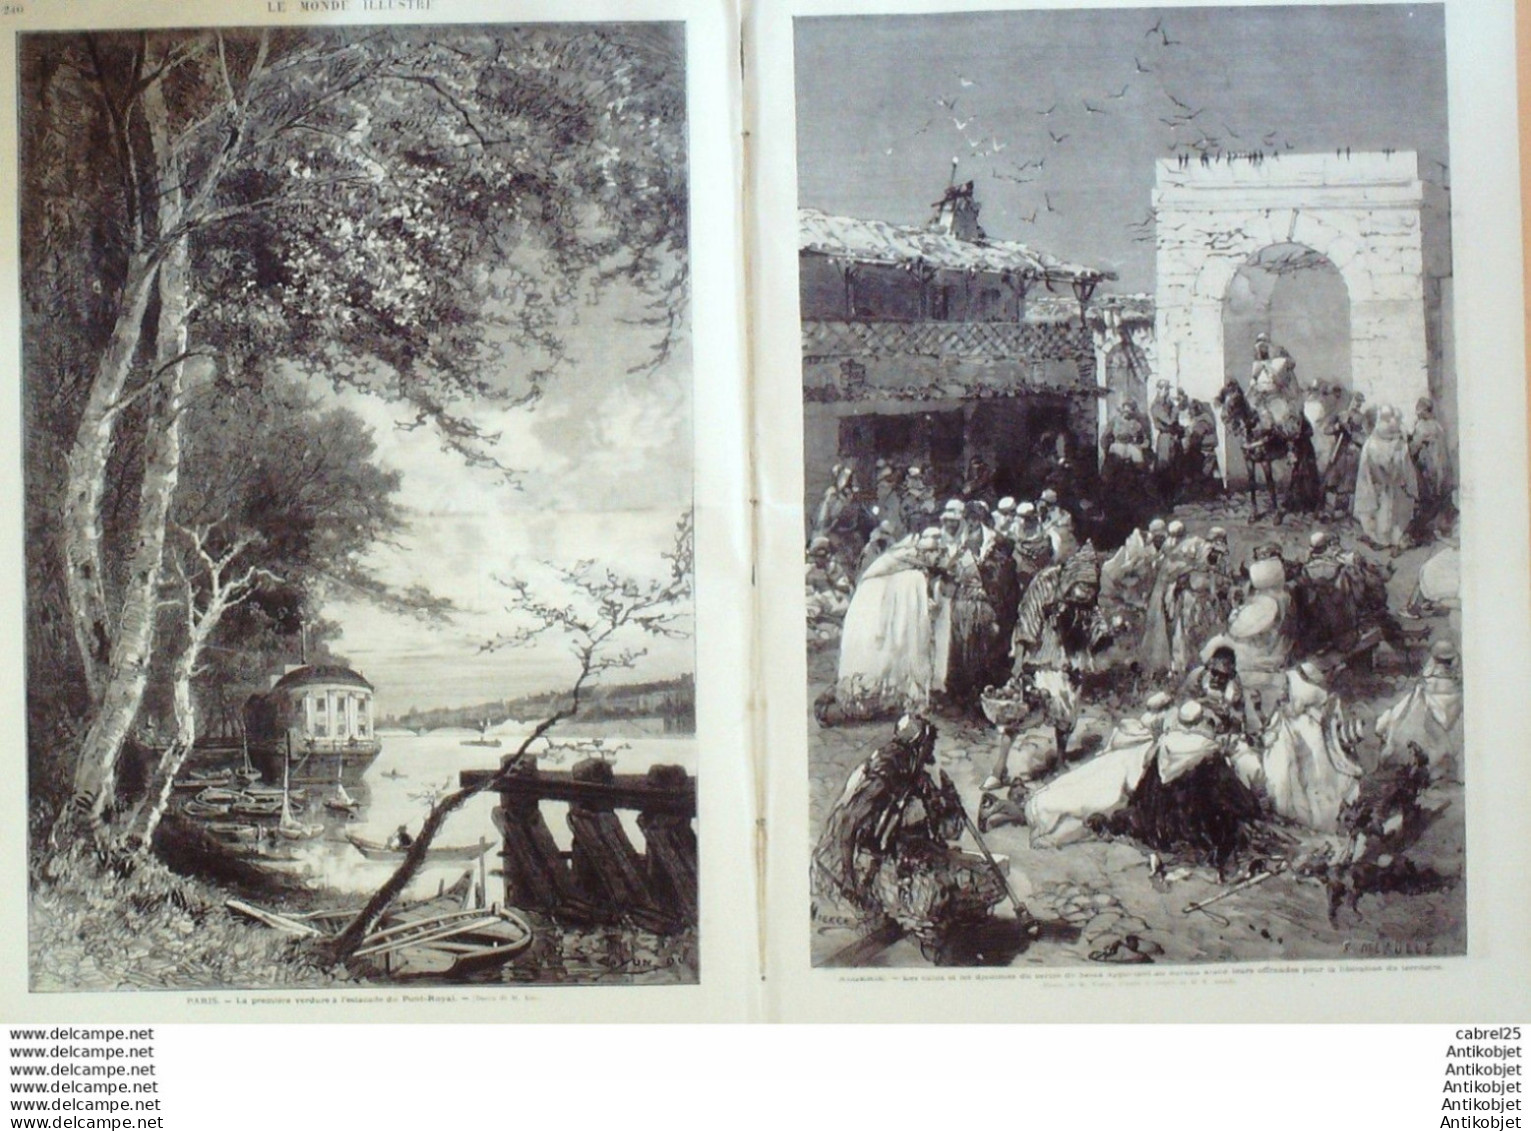 Le Monde Illustré 1872 N°784 Villers-Cotterets (02) Marseille (13) Cap Pinède Algérie Djemmas Pays Bas Rotterdam - 1850 - 1899